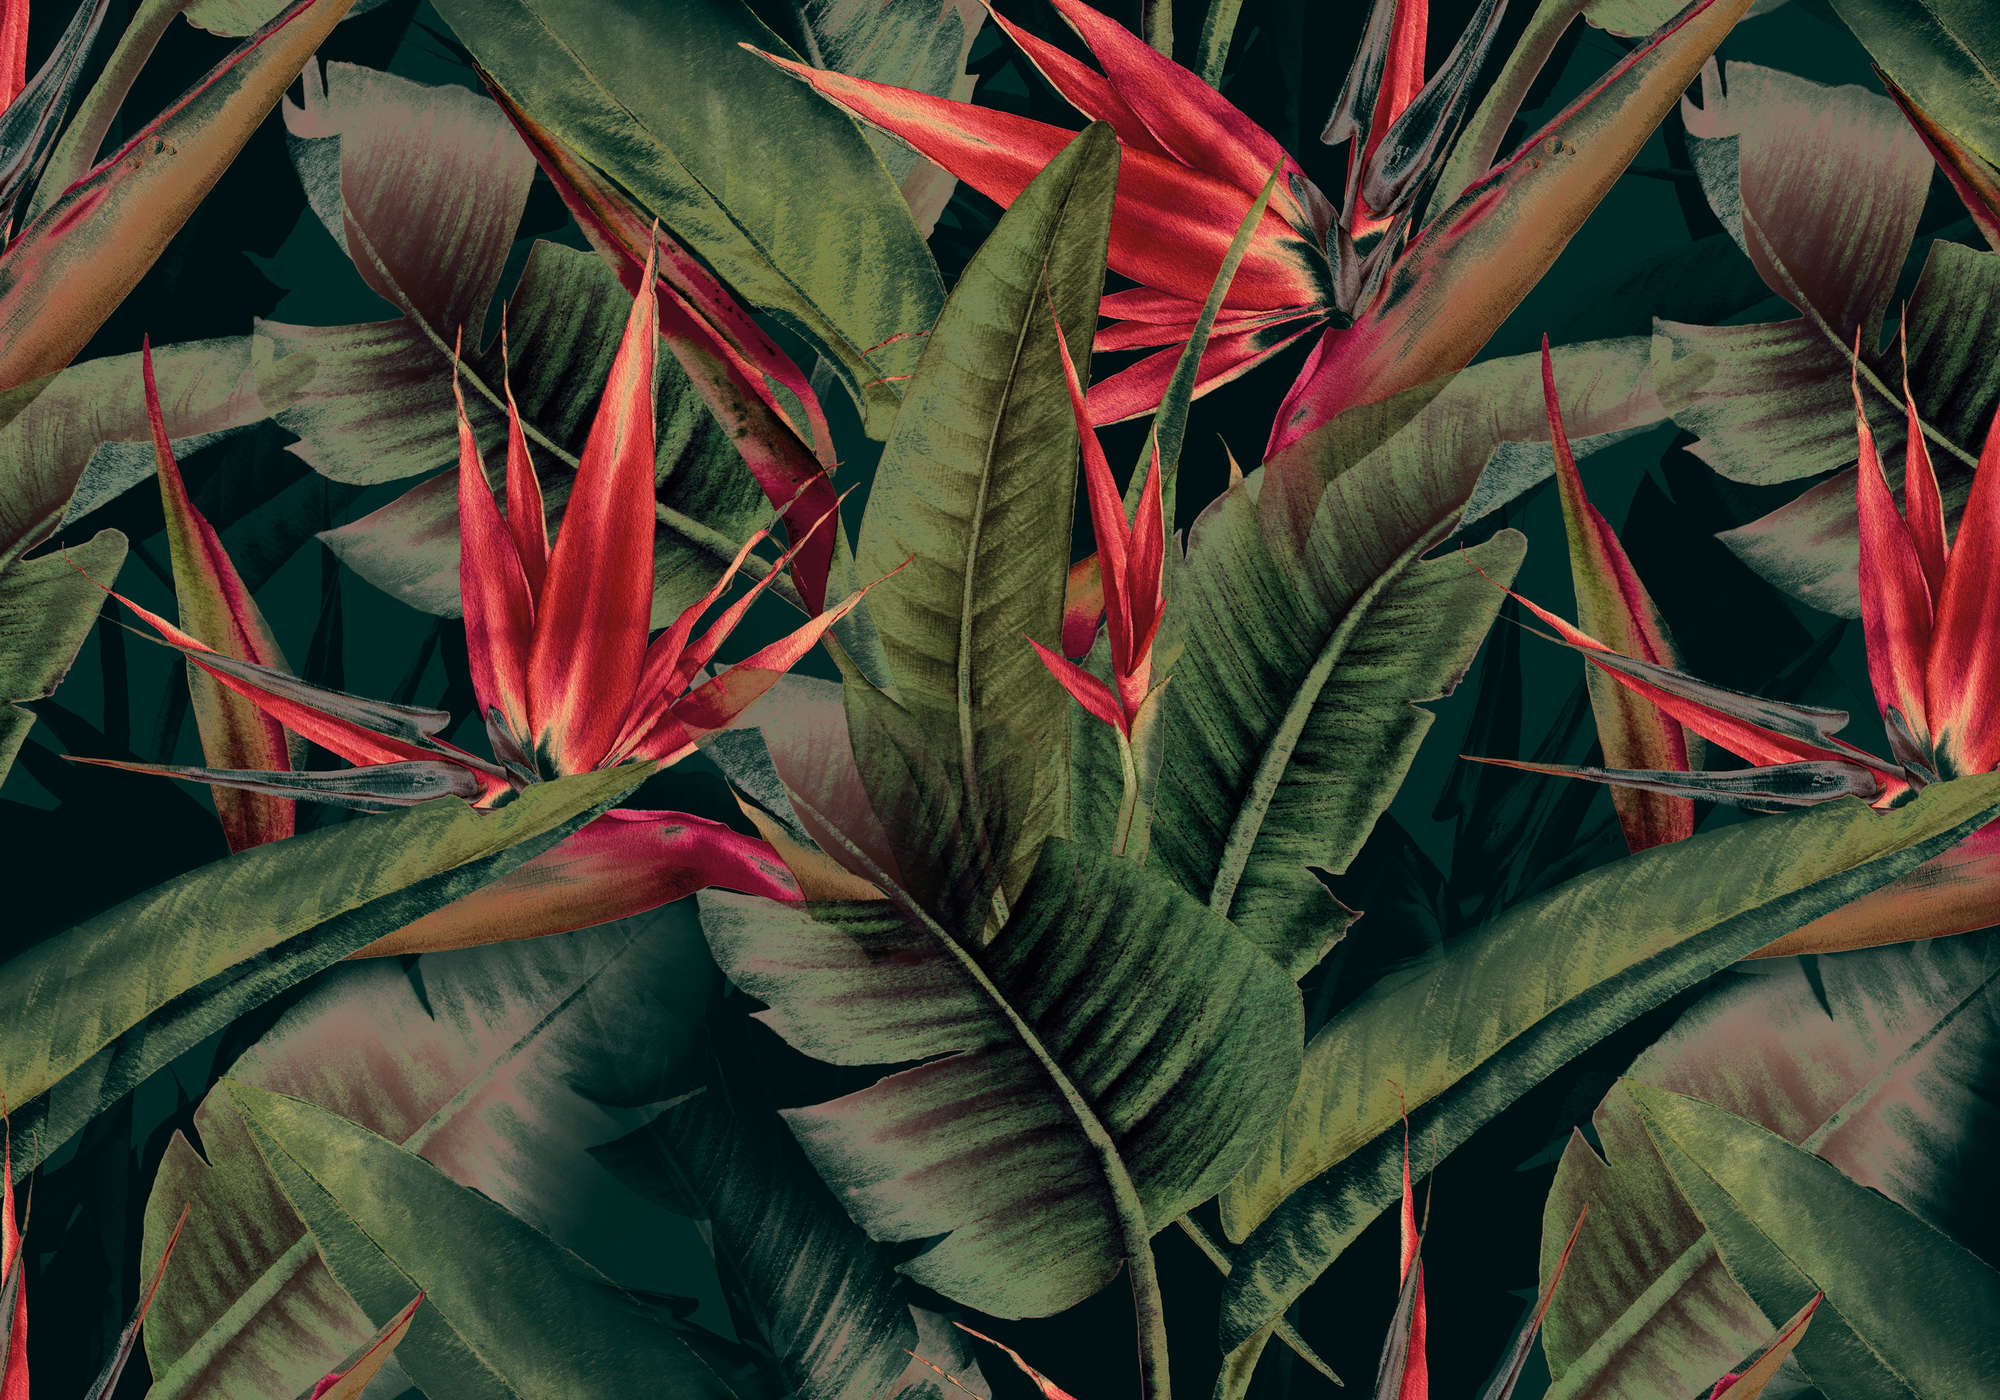             Dschungel Fototapete grün mit roten Paradiesvogelblumen
        